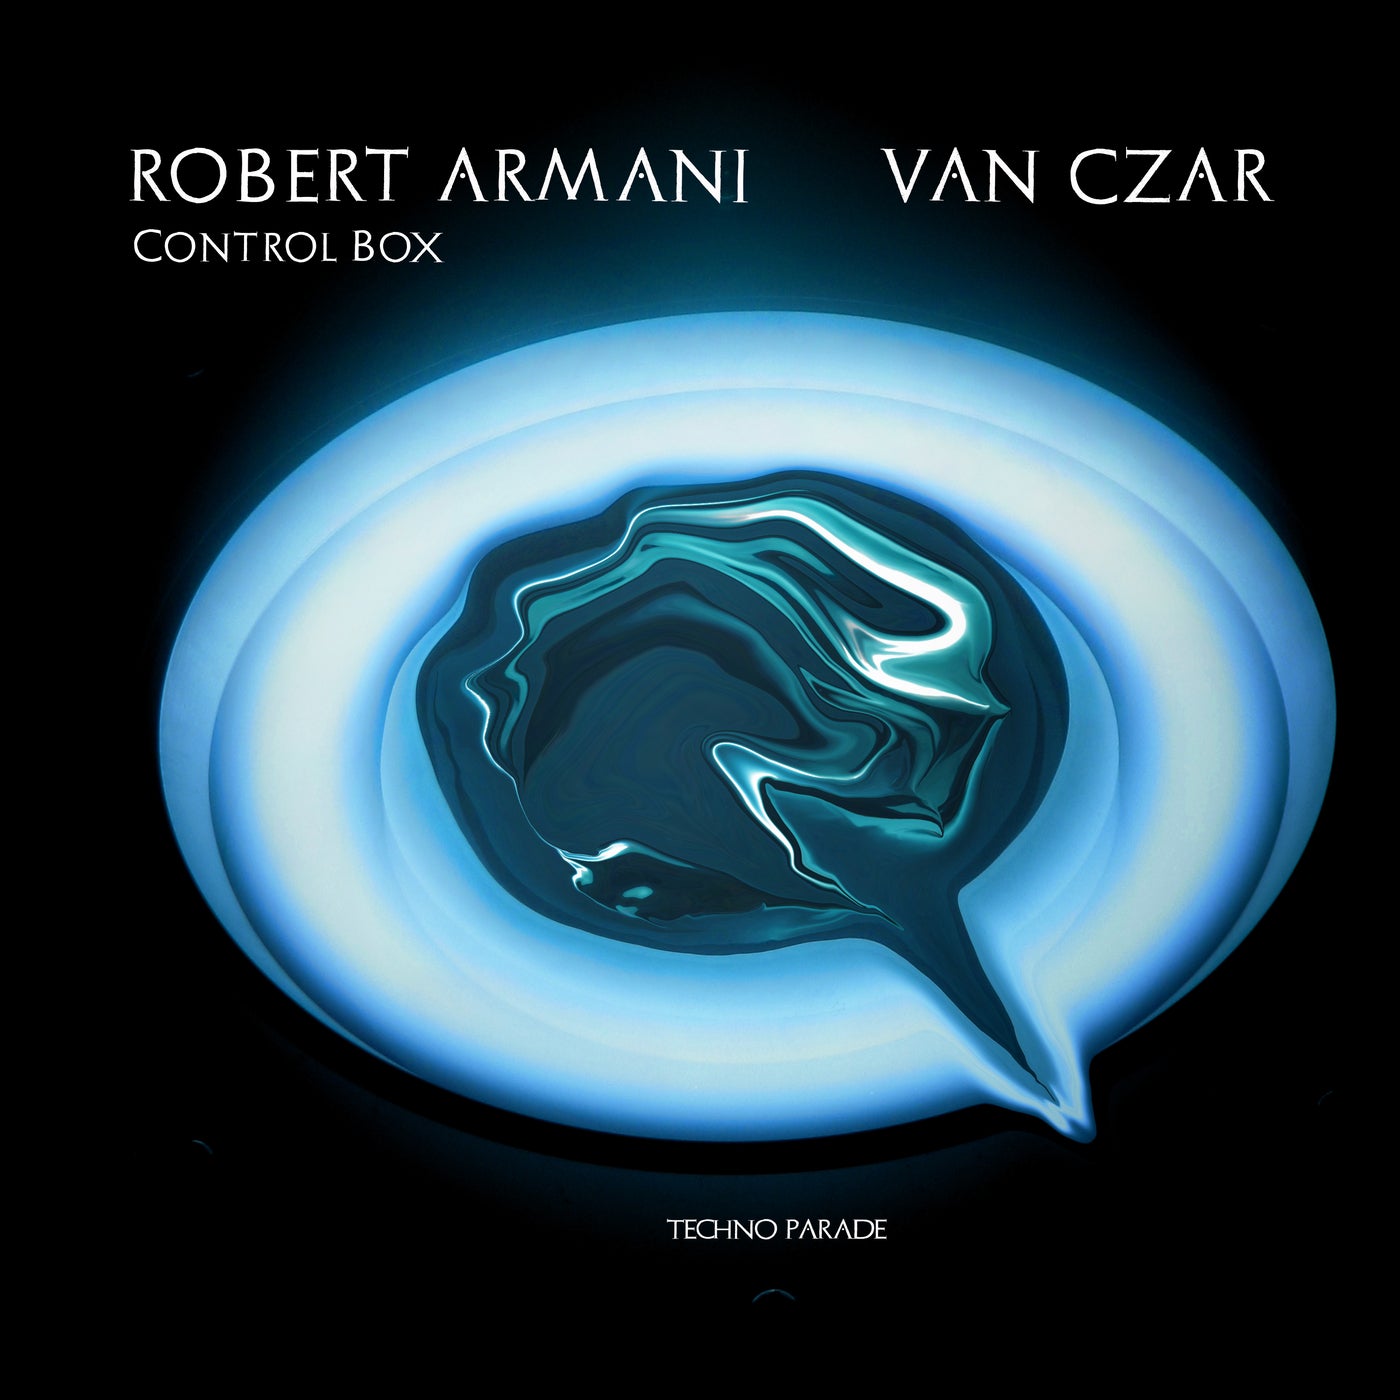 Robert Armani music download - Beatport